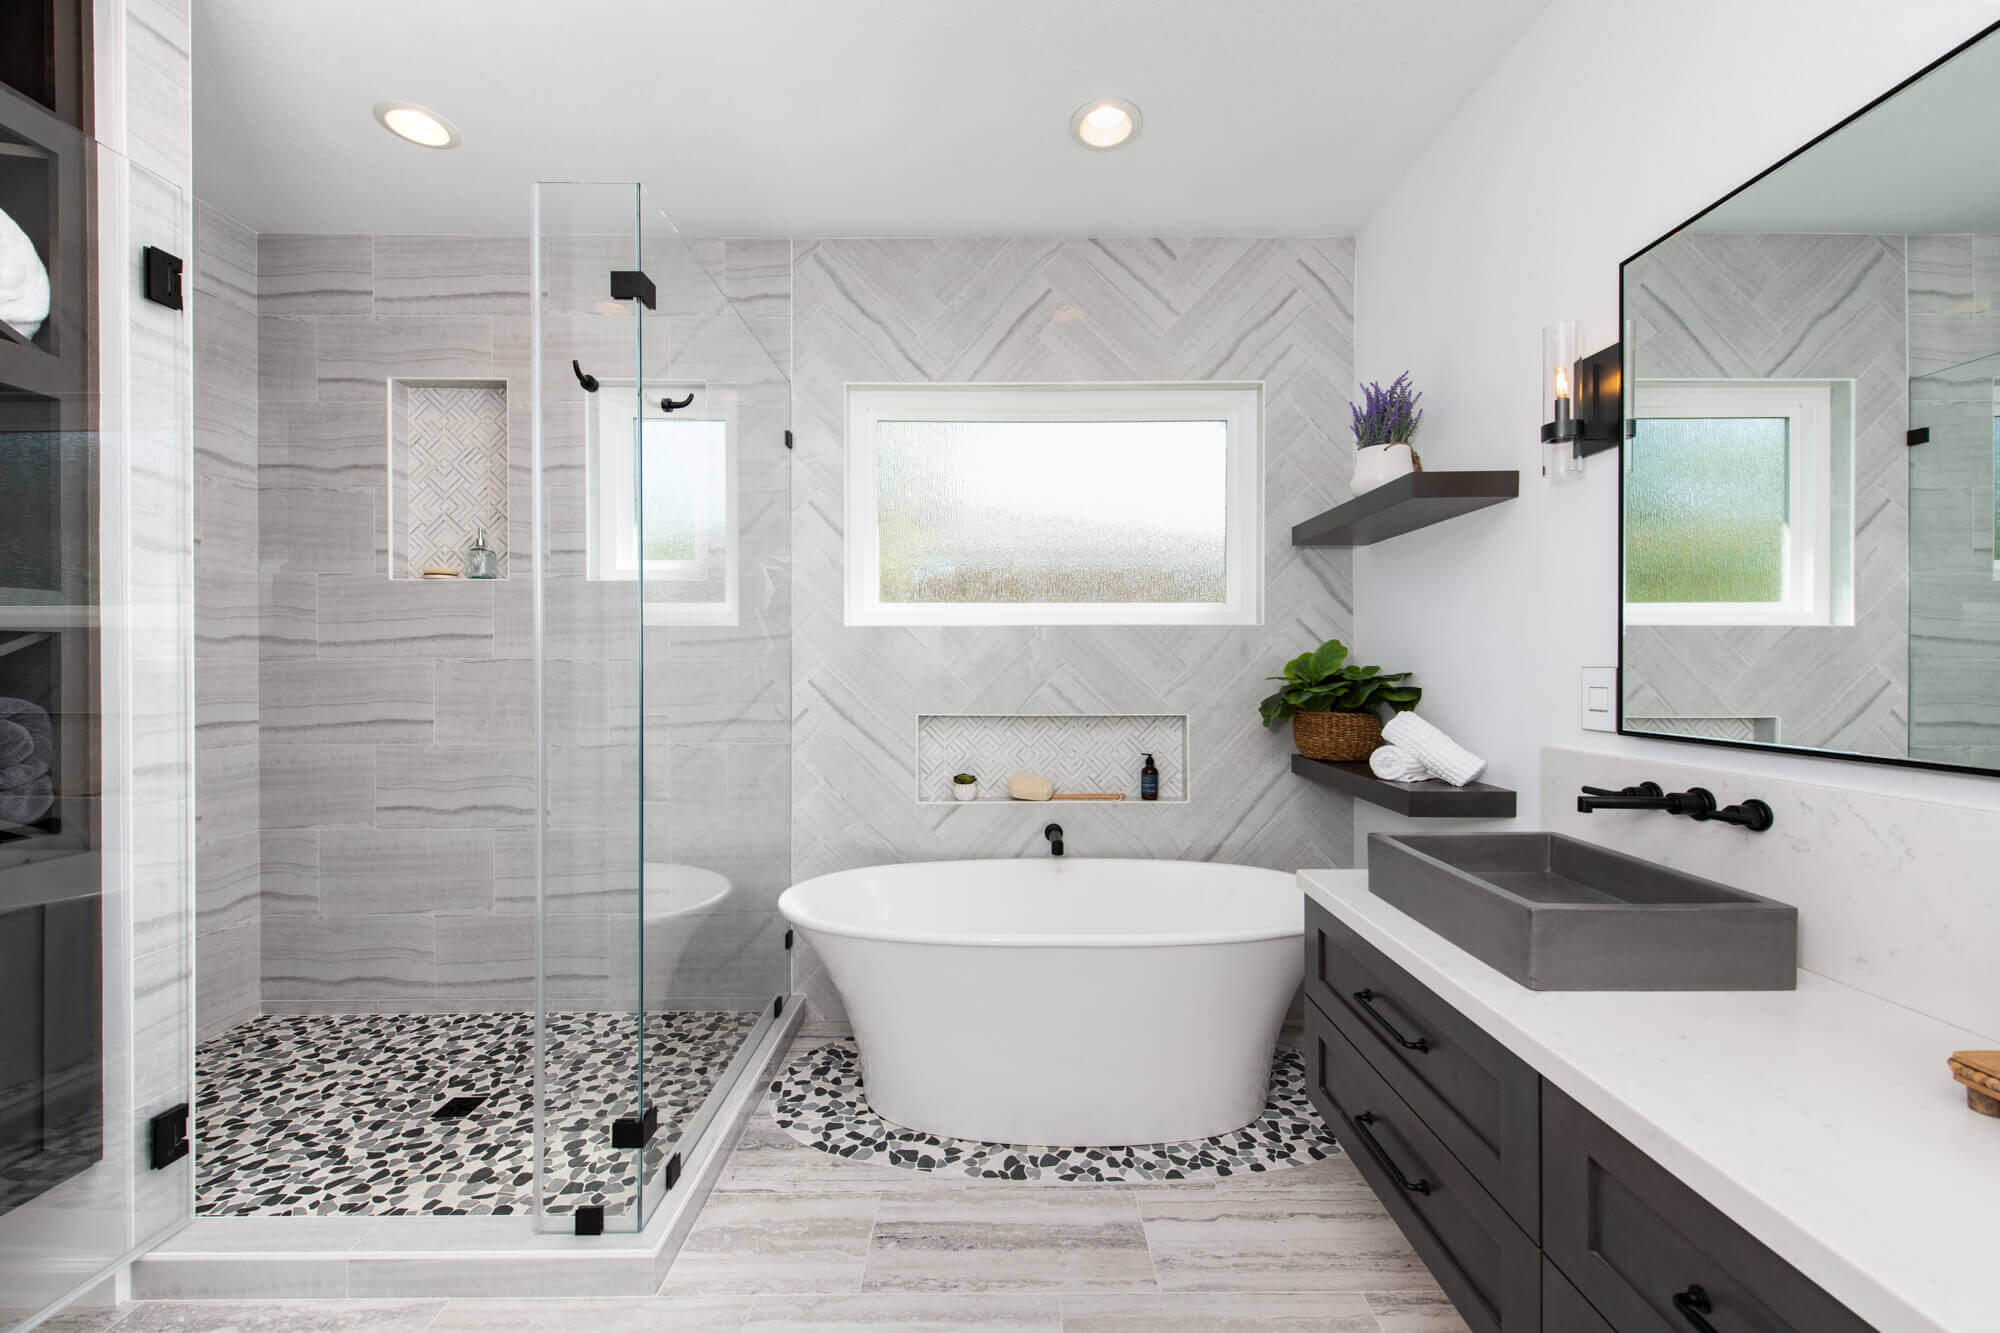 Walk-in shower with modern design